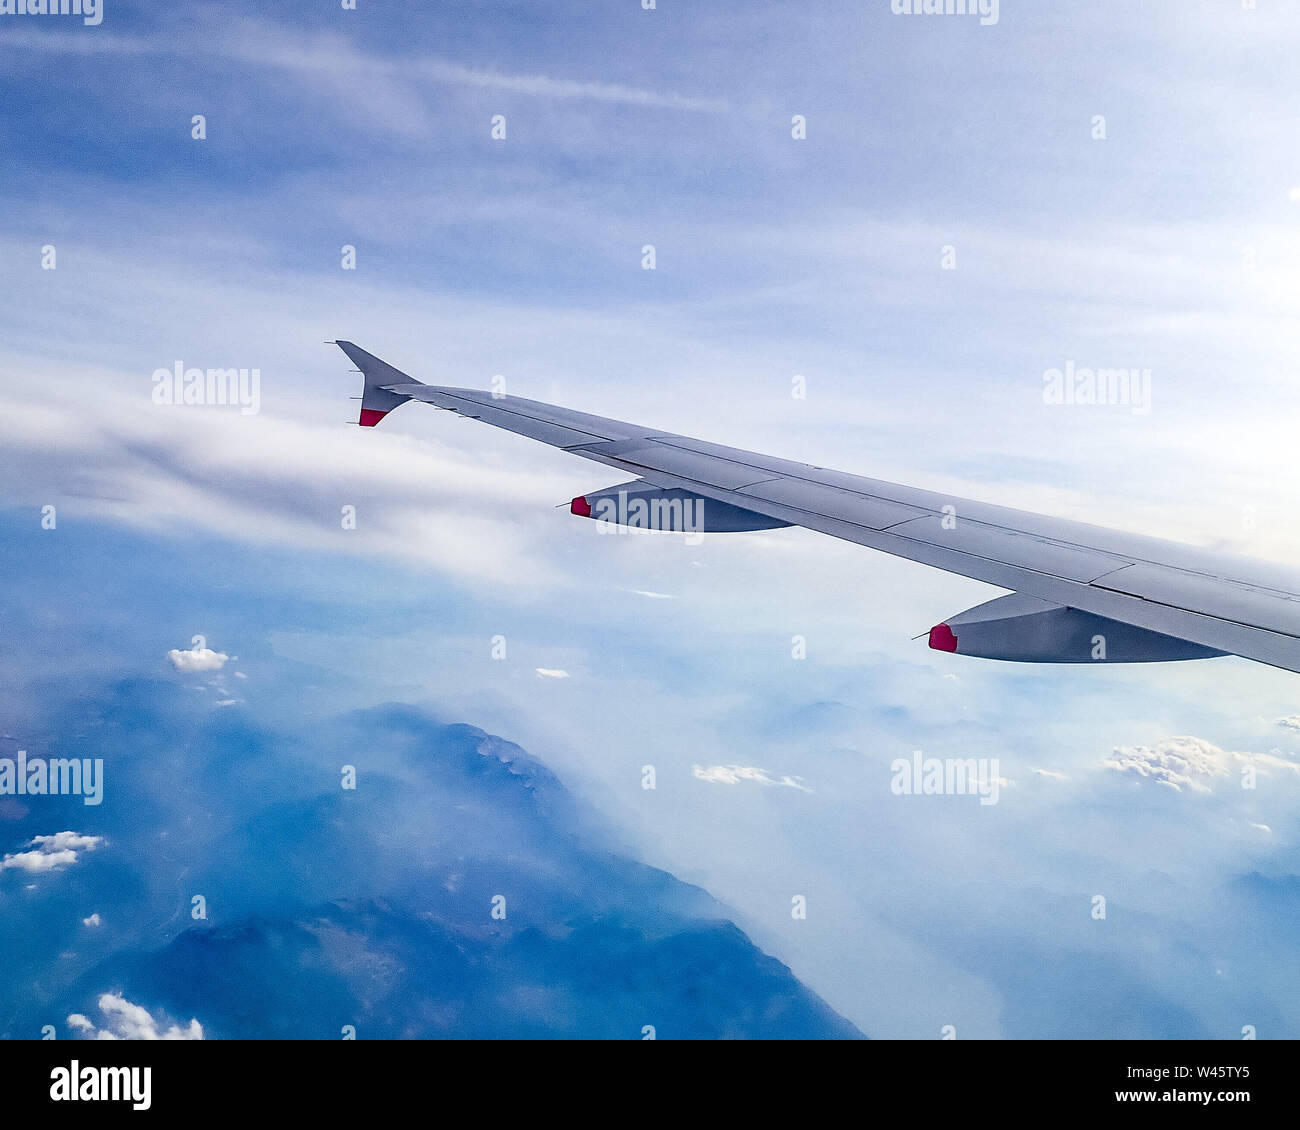 Venedig, 16. Juli 2019. British Airways Airbus 319 im Flug über Italien. Foto von Enrique Ufer/Alamy Stock Foto Stockfoto